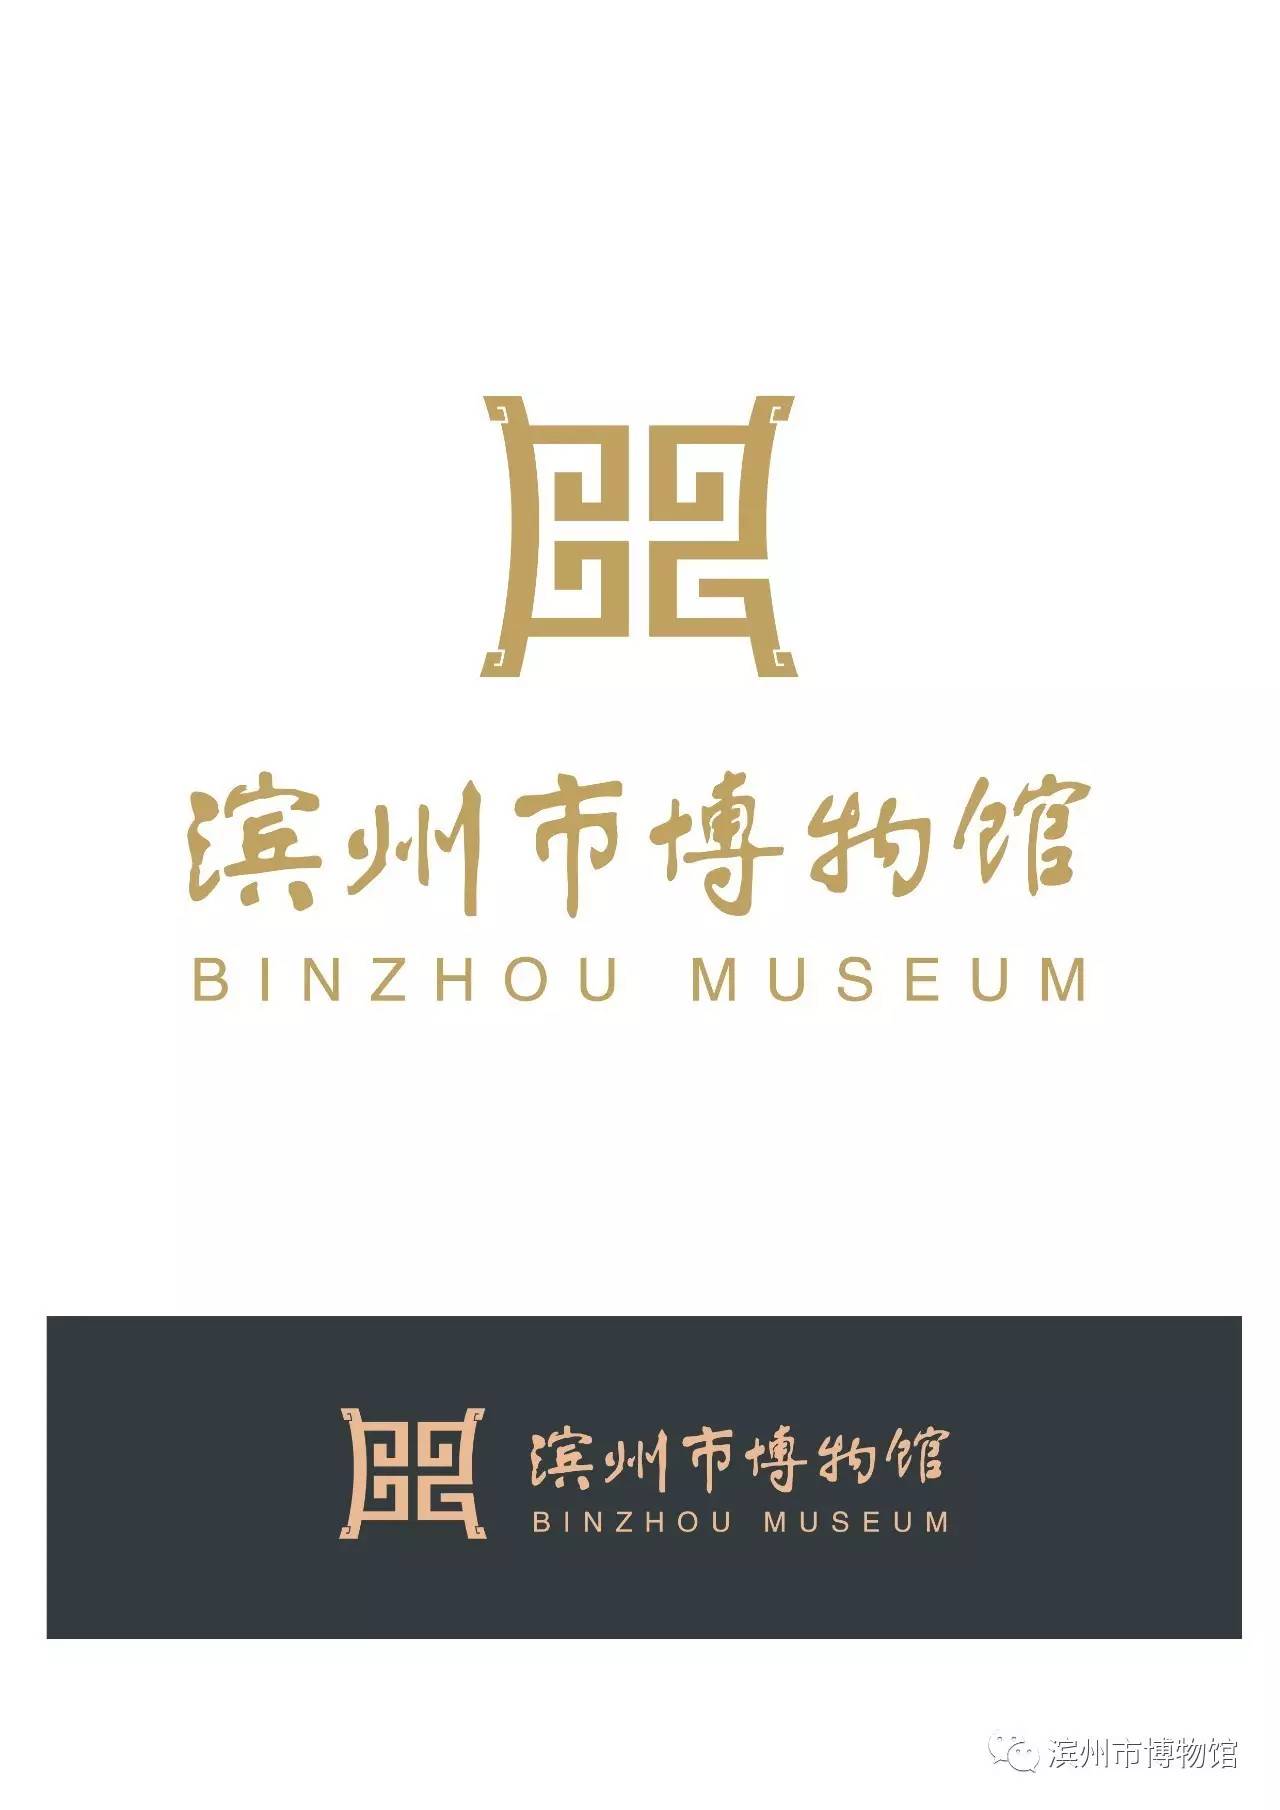 滨州市博物馆征集logo设计方案公布结果啦!